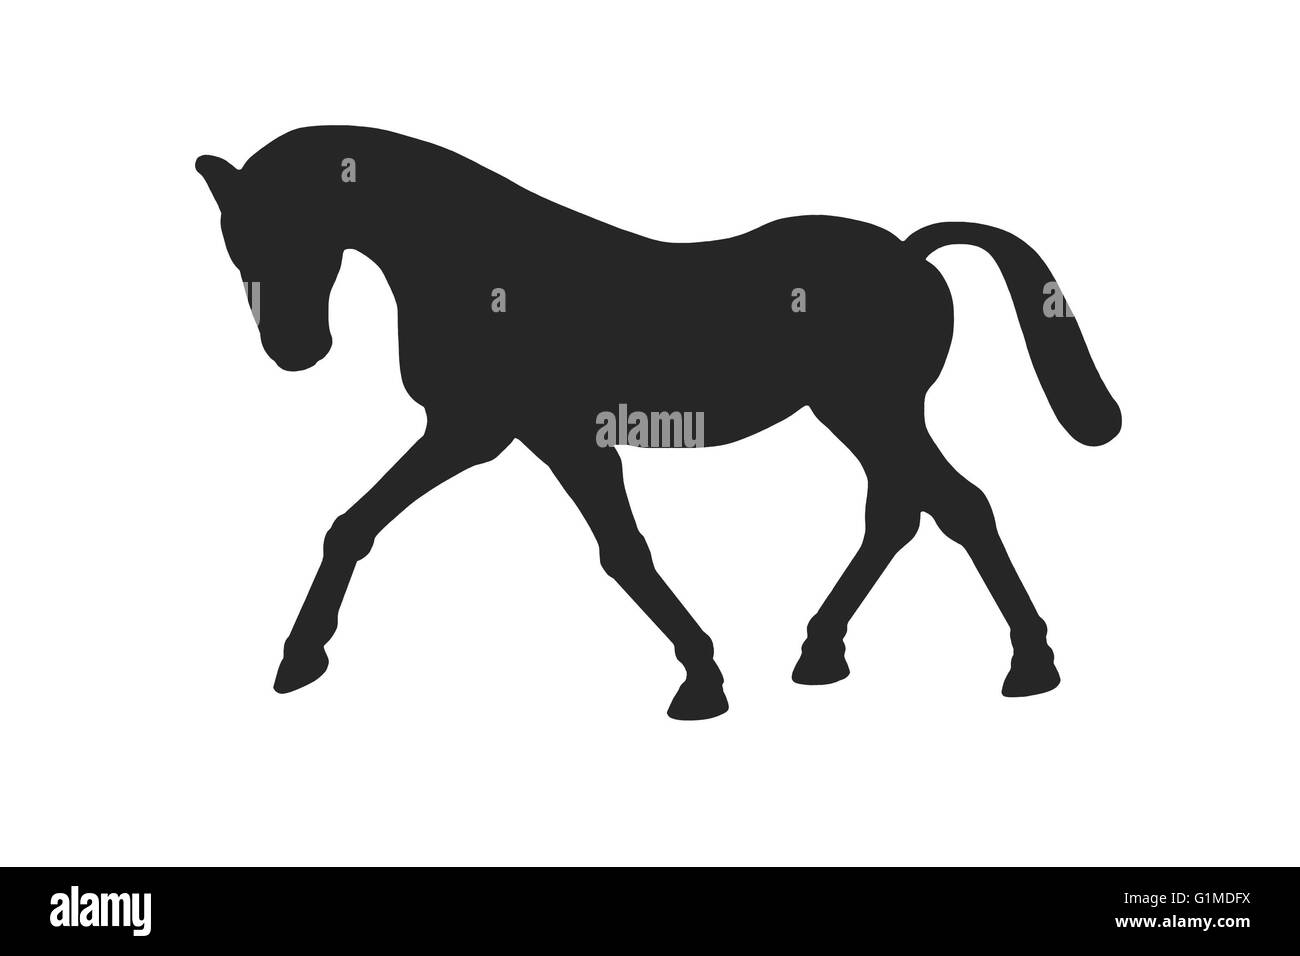 Ein Bild zeigt eine Pferd oder Pony Form in schwarz auf weiß Silhouette Stockfoto